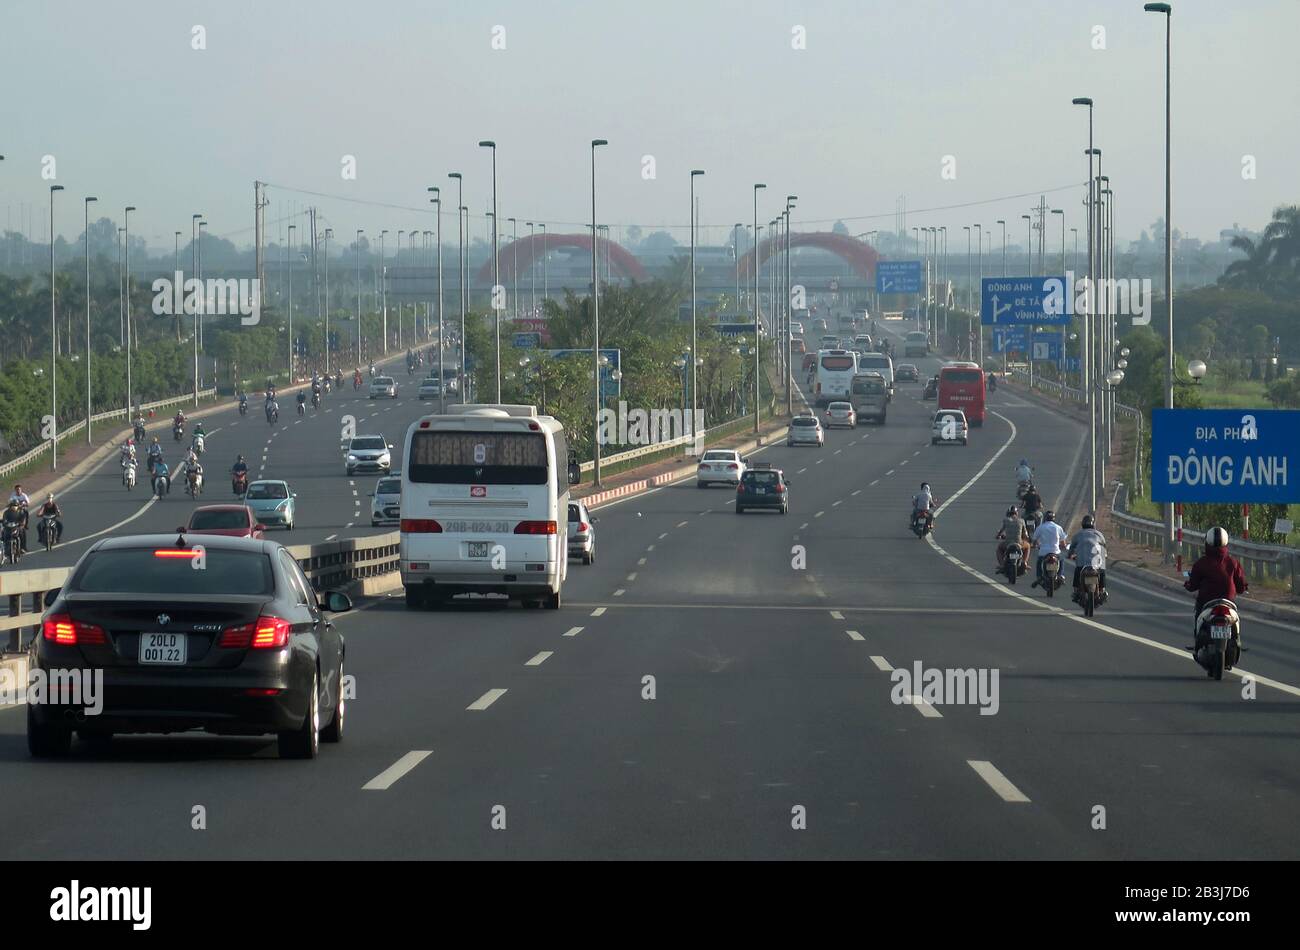 Autobahn, Hanoi, Vietnam Stock Photo